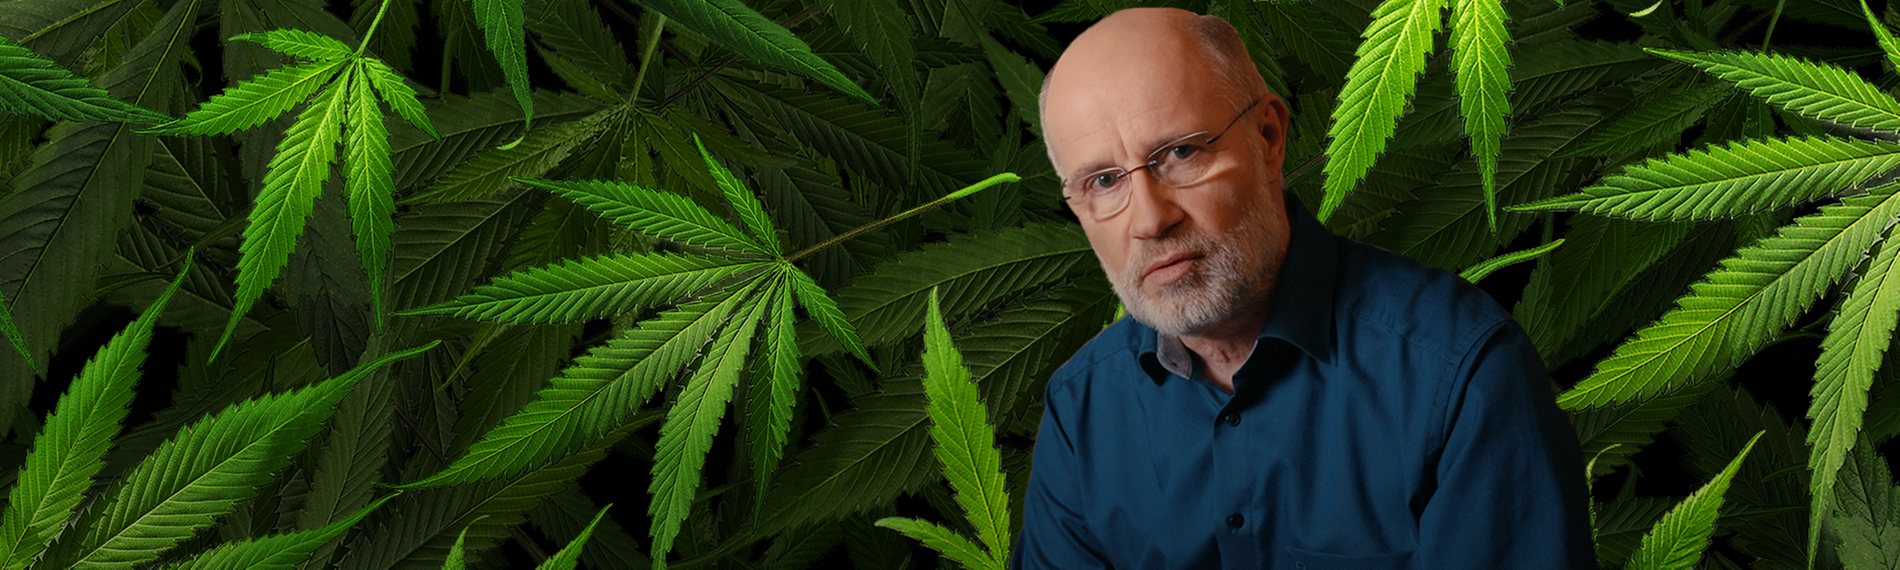 Collage: Harald Lesch vor Cannabisblättern